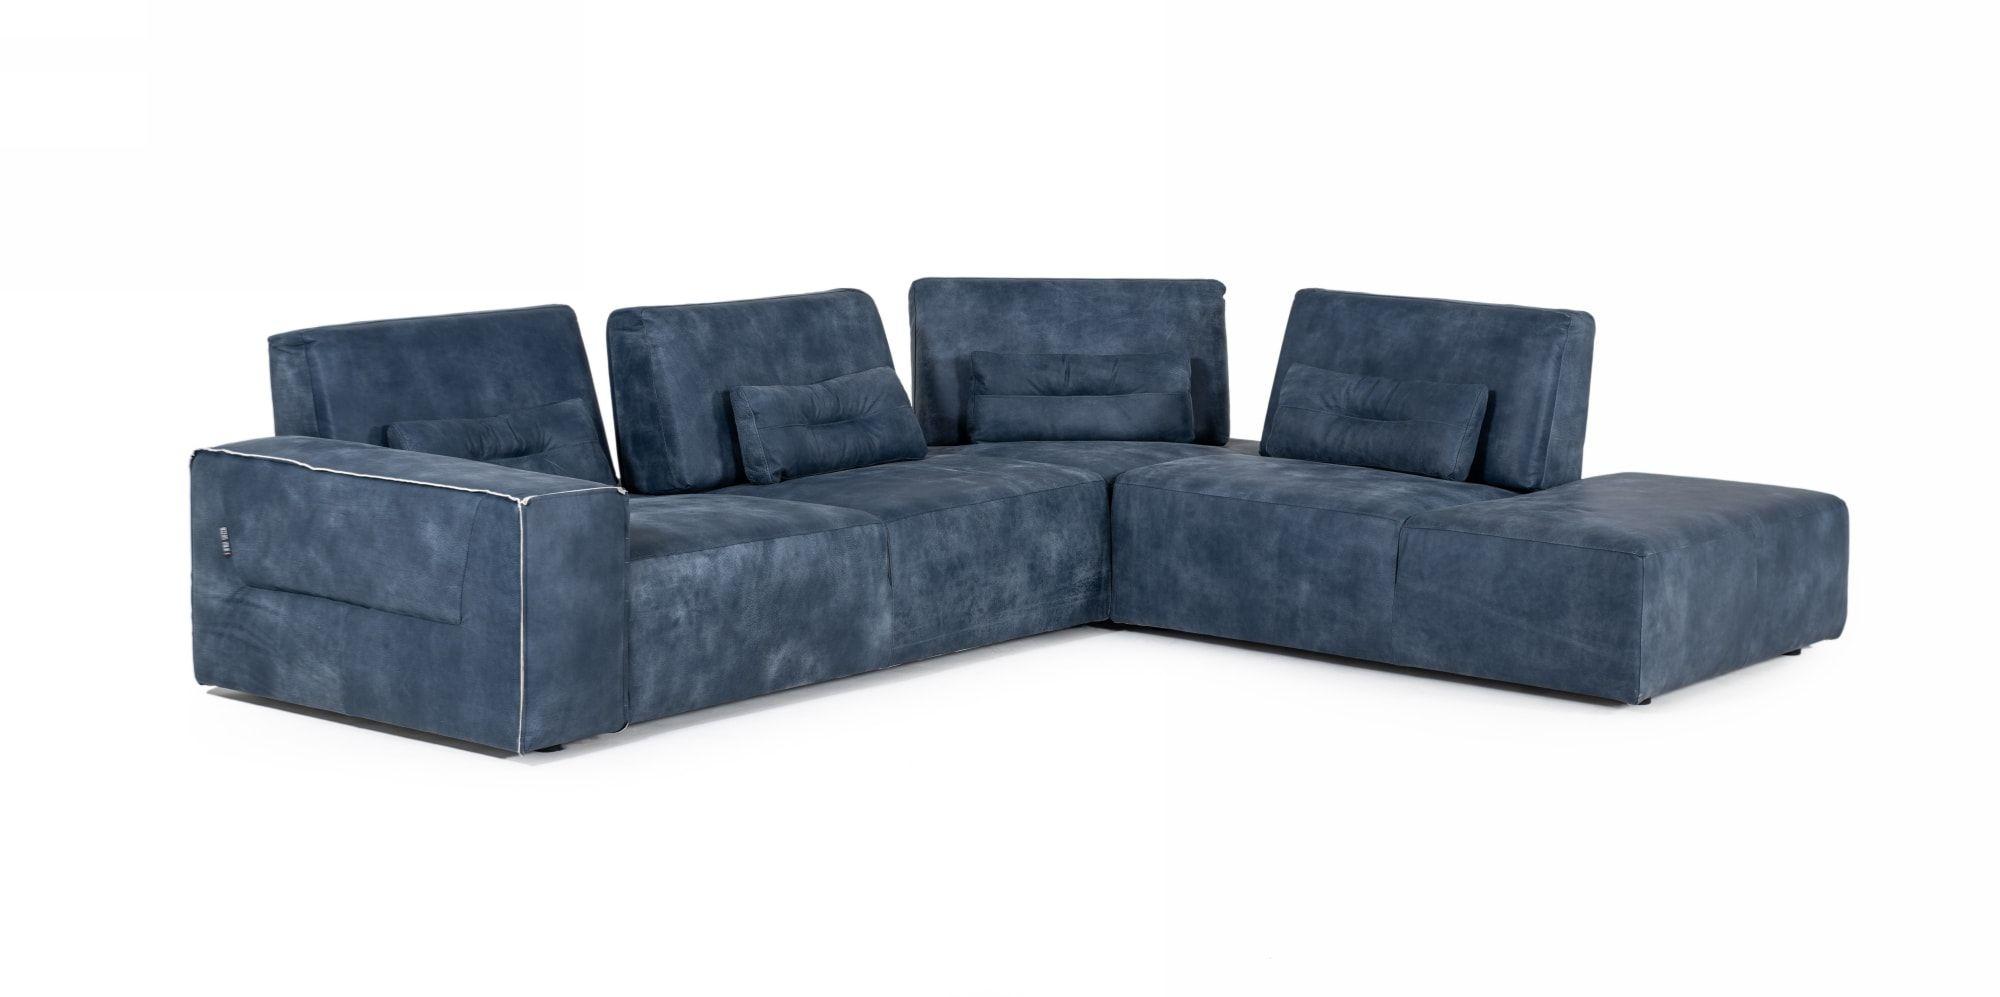 

    
VGDDENJOY-DKBLUE Sectional Sofa
